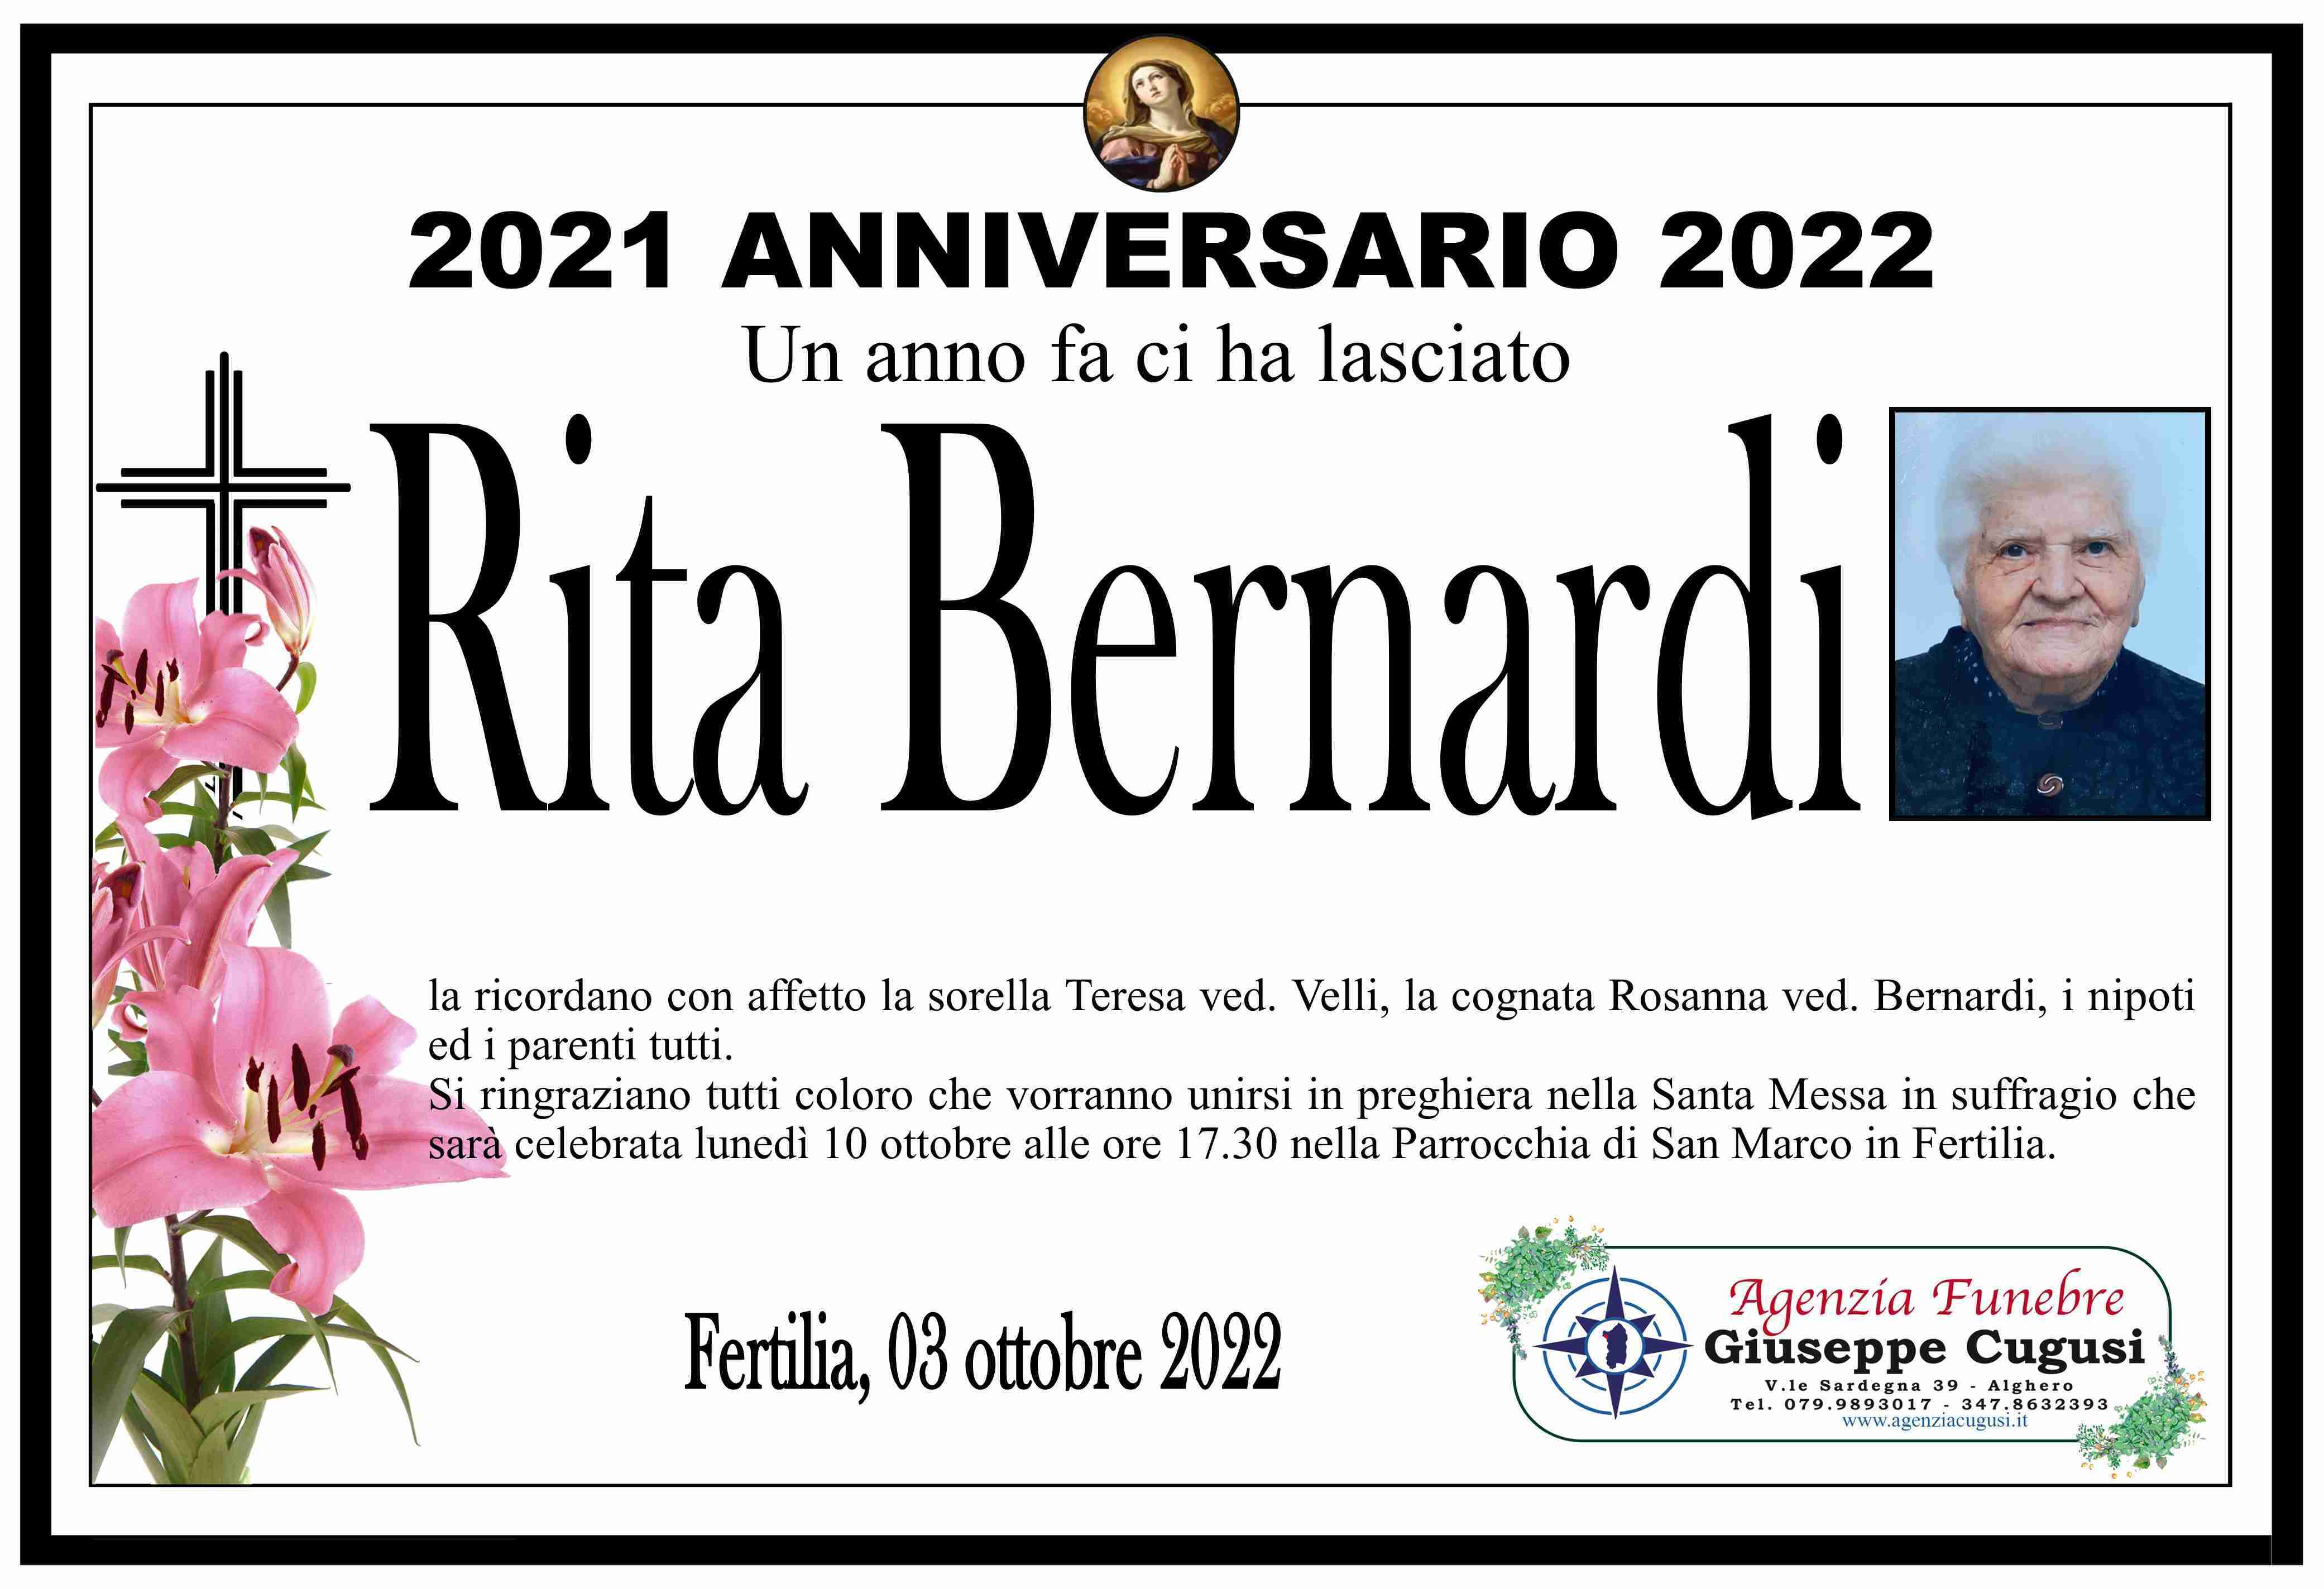 Rita Bernardi